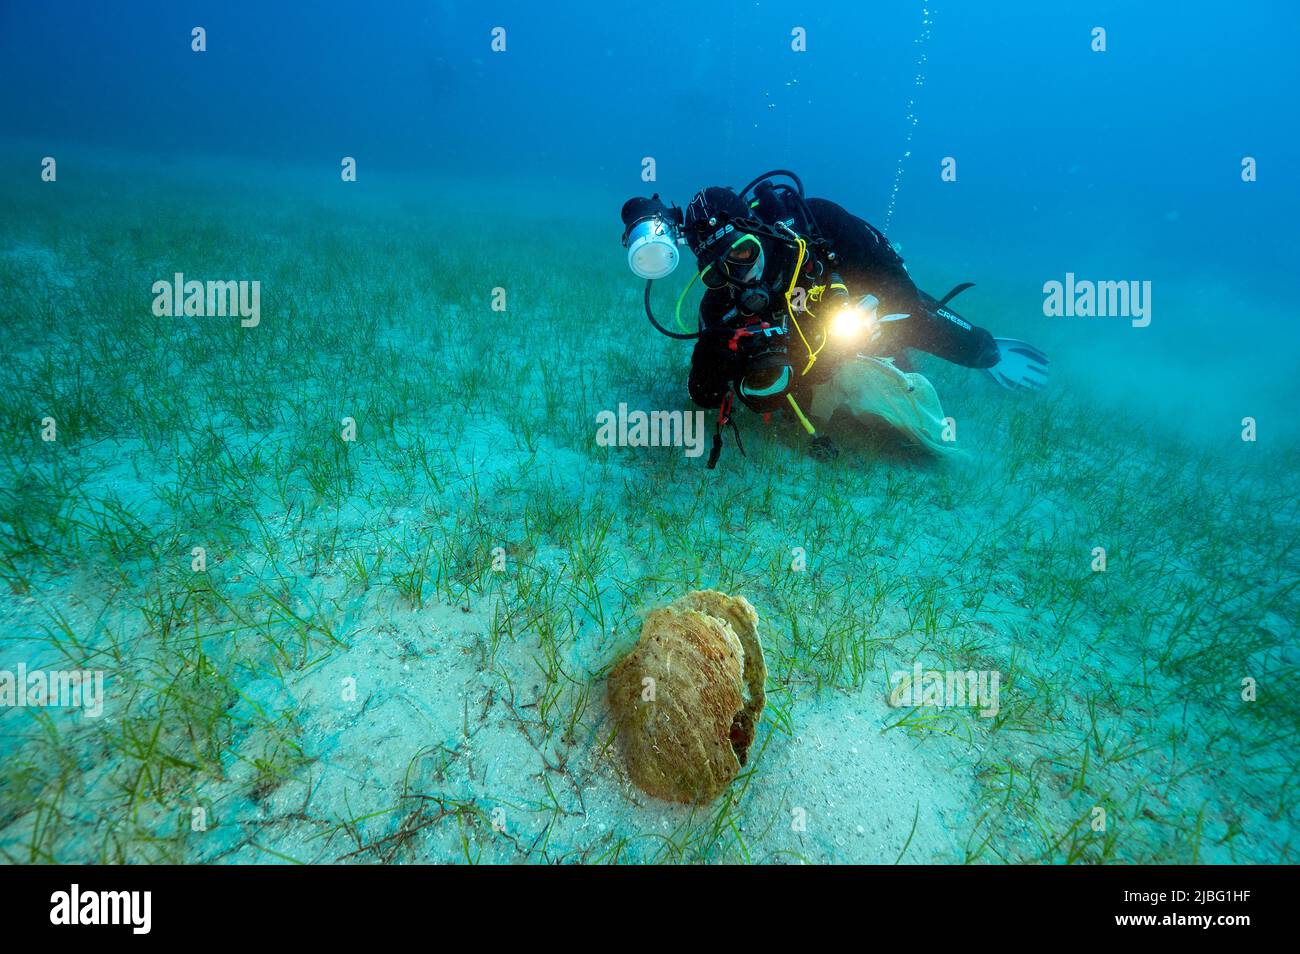 Biólogos marinos que examinan las cáscaras muertas y extintas de Pina nobilis en la bahía de Gokova, Turquía Foto de stock